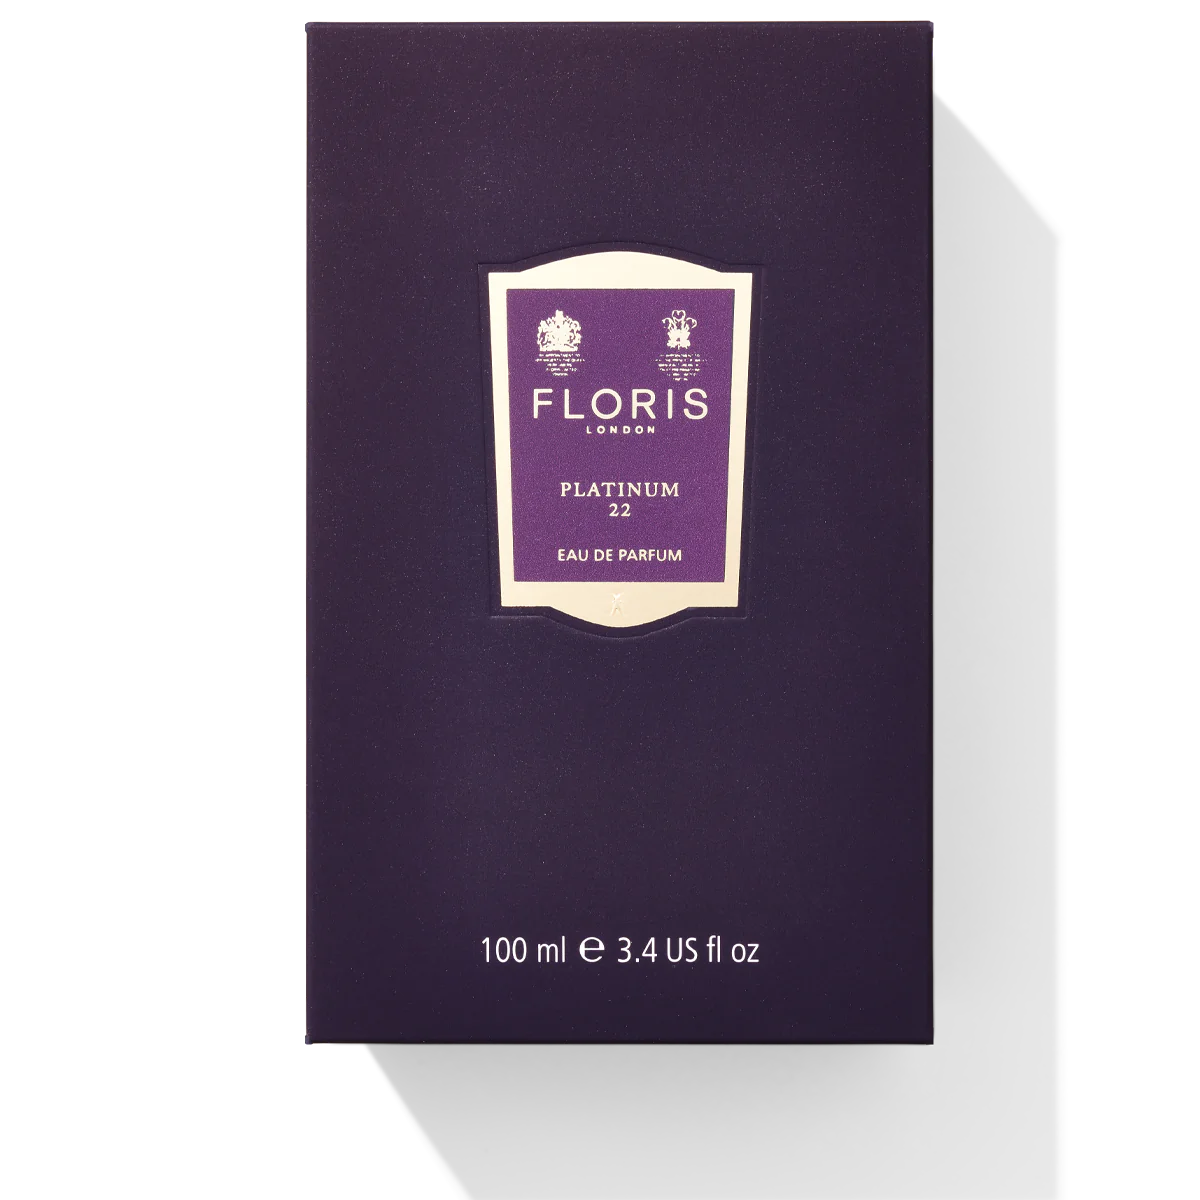 Floris London Platinum 22 Eau de Parfum 100ml Box